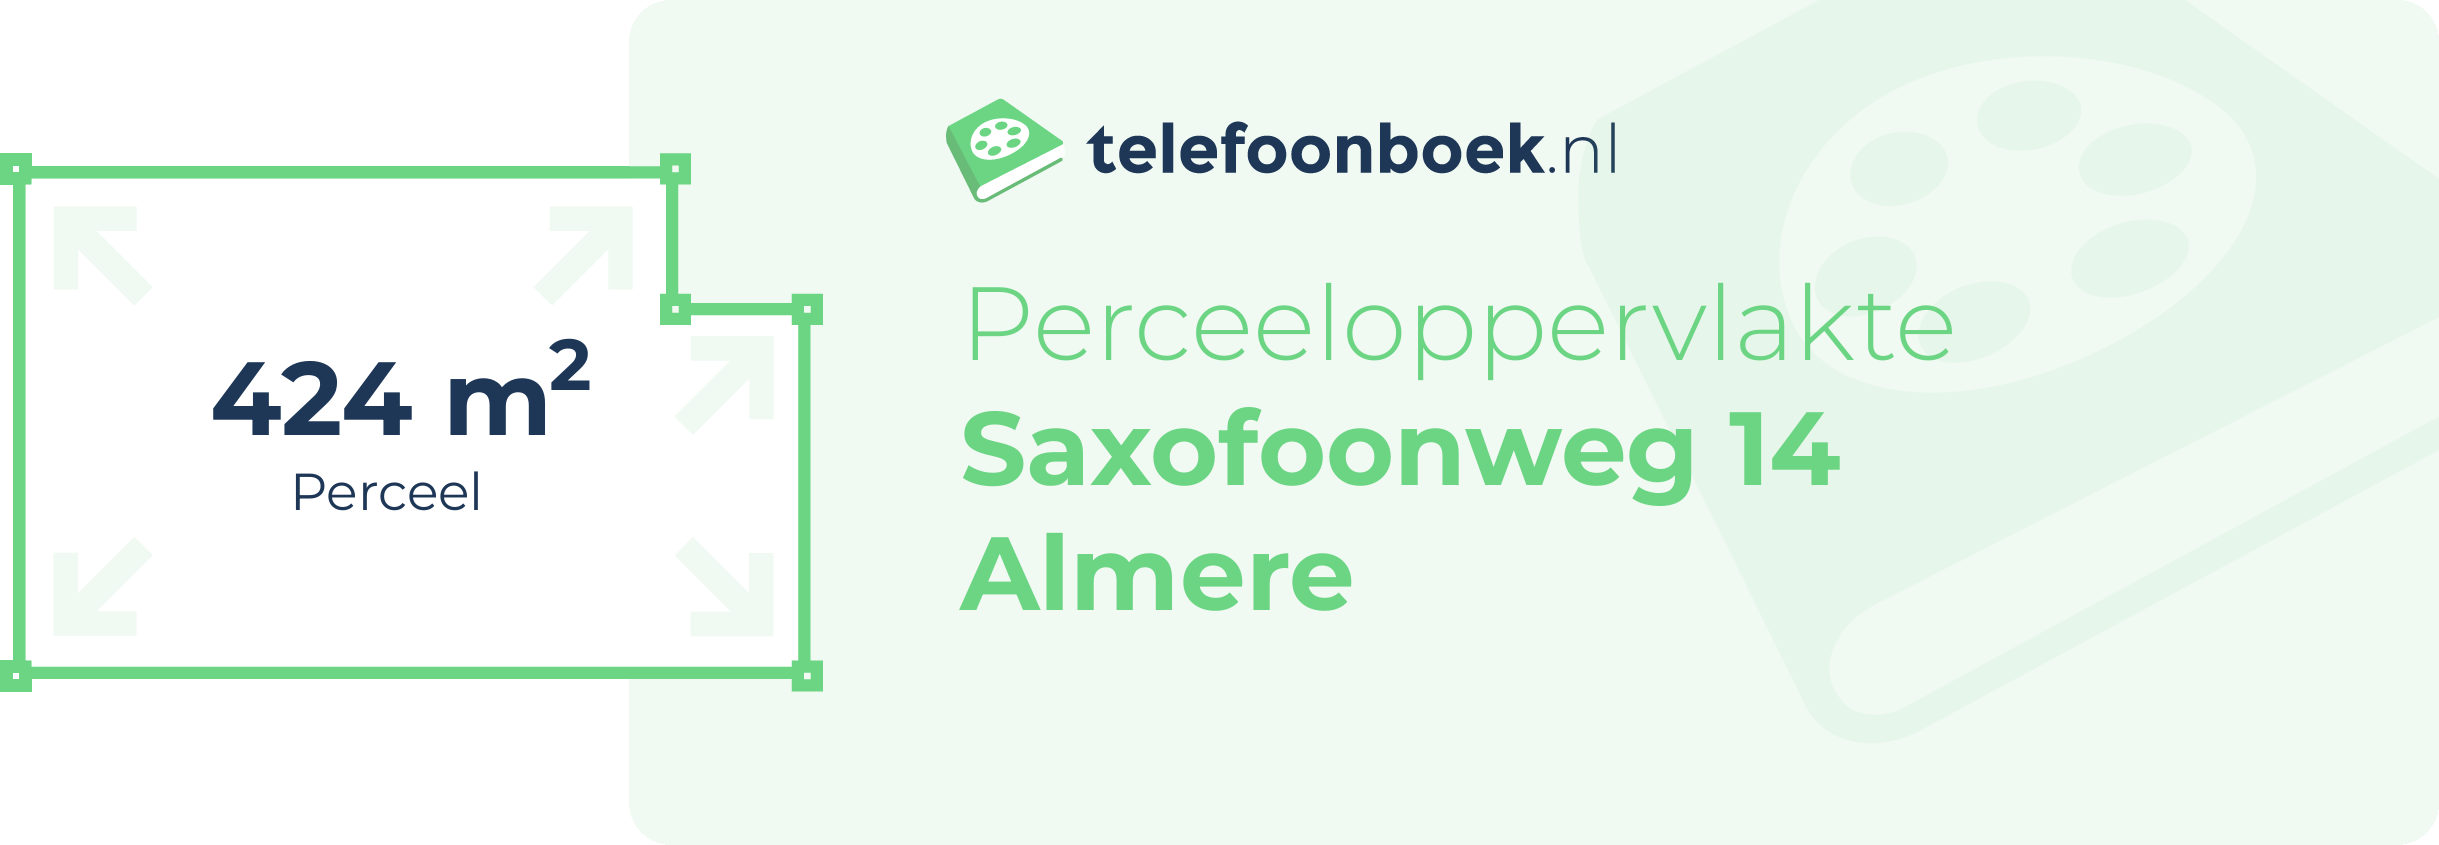 Perceeloppervlakte Saxofoonweg 14 Almere